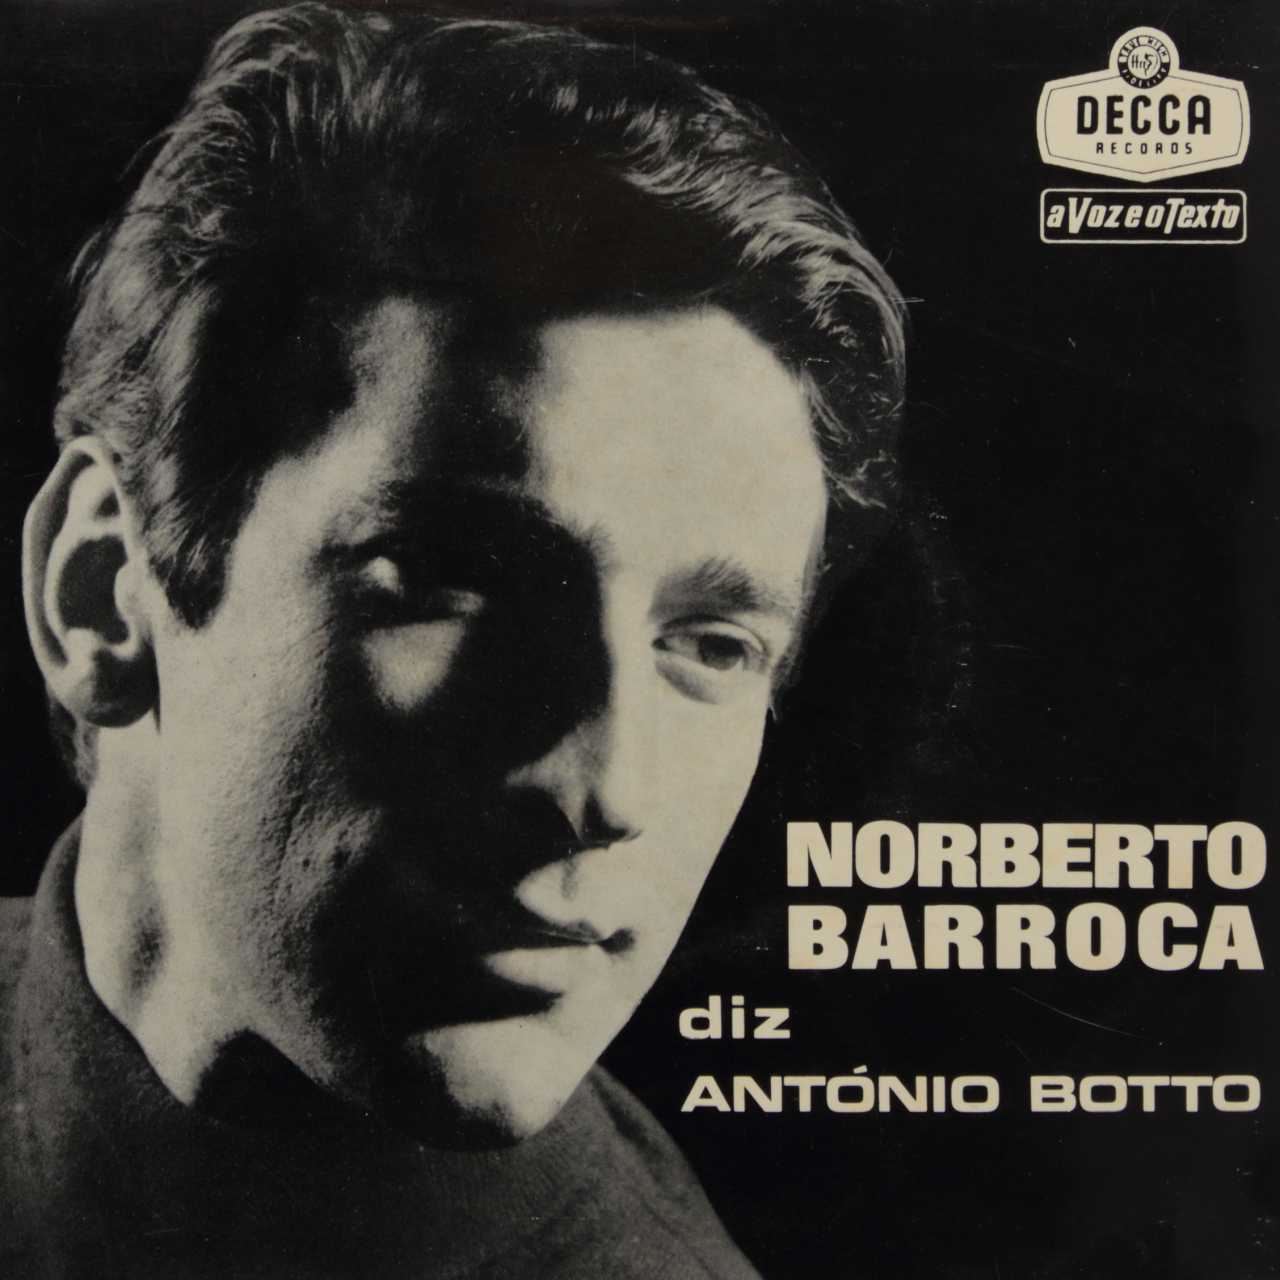 Norberto Barroca diz António Botto